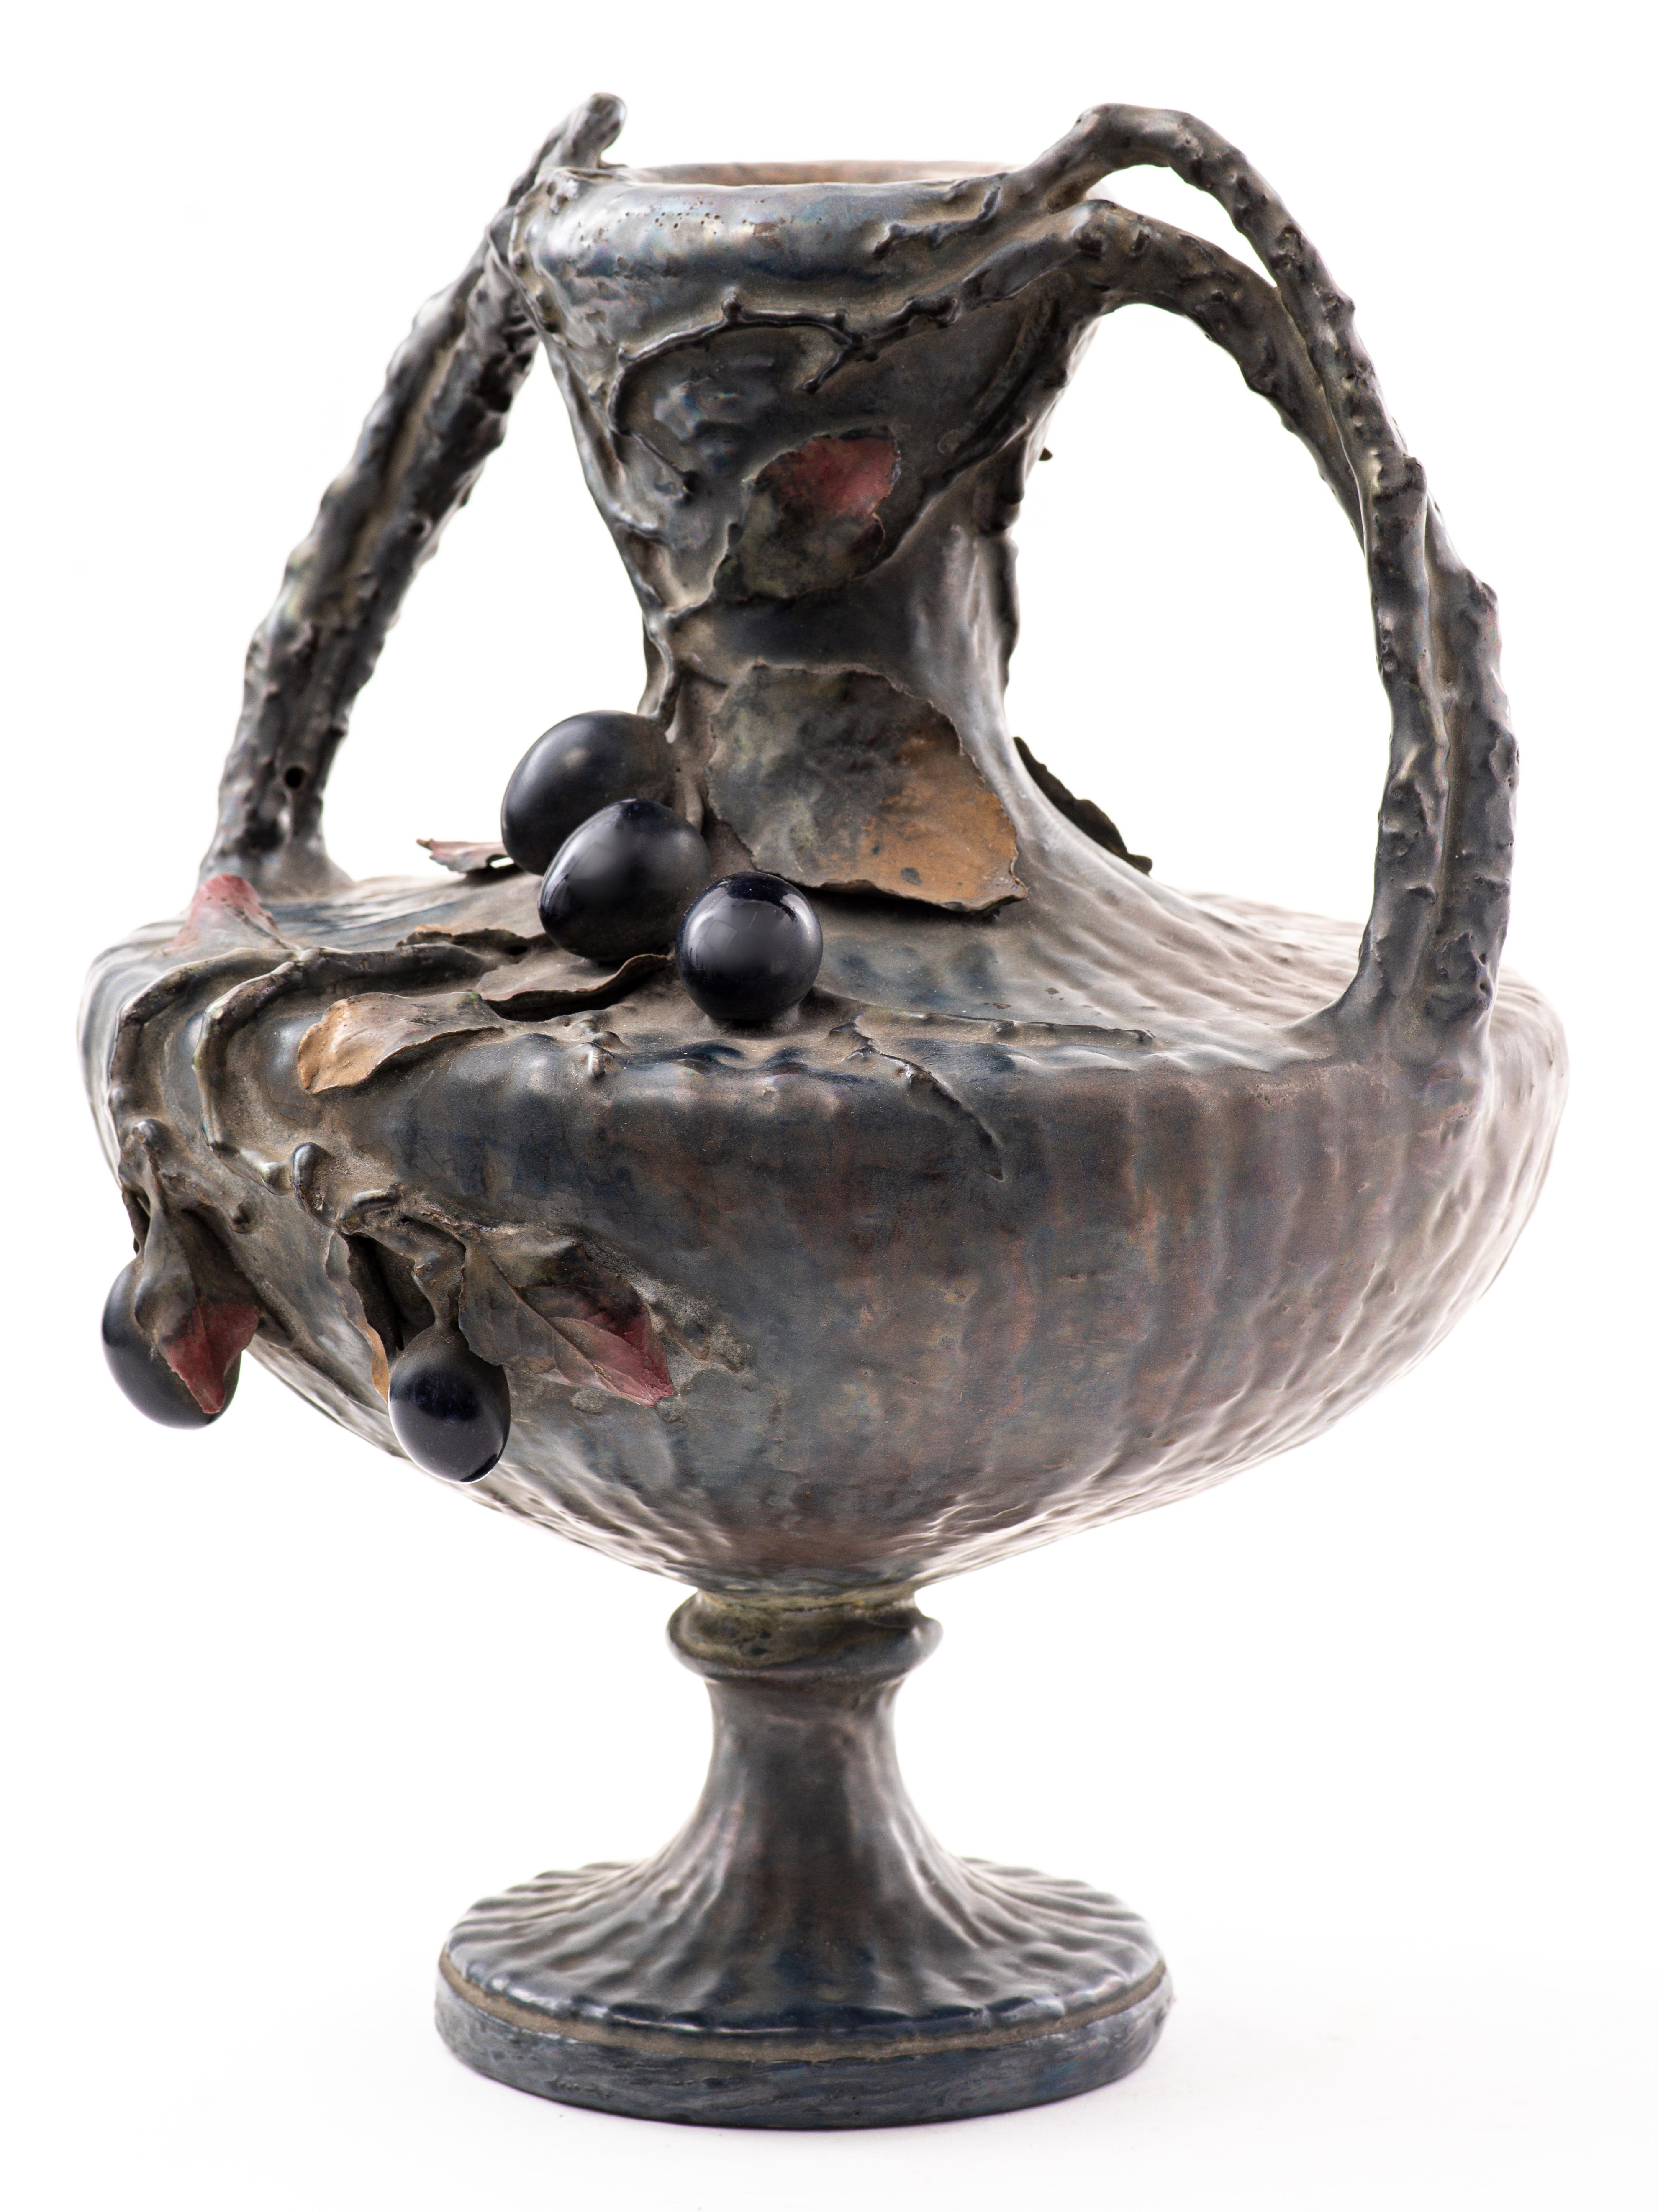 Amphora Vase à deux anses en céramique semi-irisée Art Nouveau autrichien, décoré d'une grappe de raisin suspendue et de vignes et feuilles. Marqué et numéroté en bas. Dimensions : 13.5